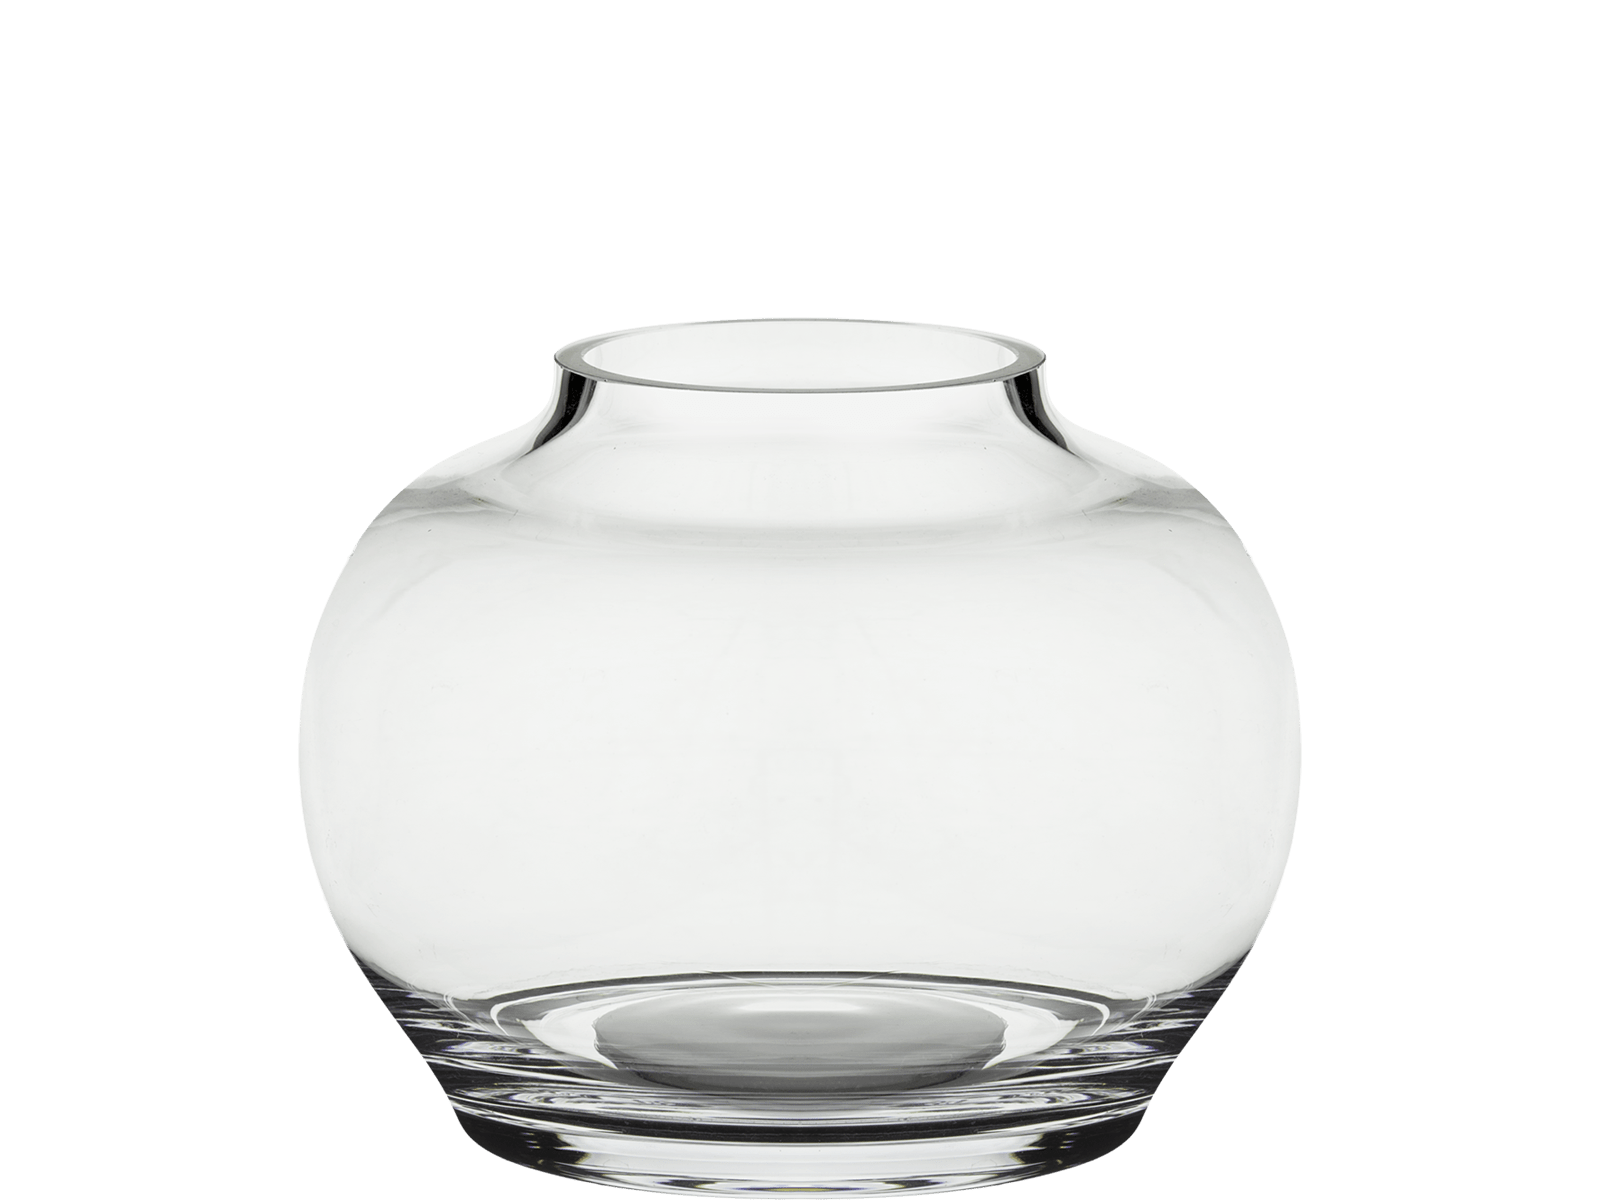 bolia-mingei-vase-O22xH17-cm-clear-glass-mingei-vaza-kicsi-uveg